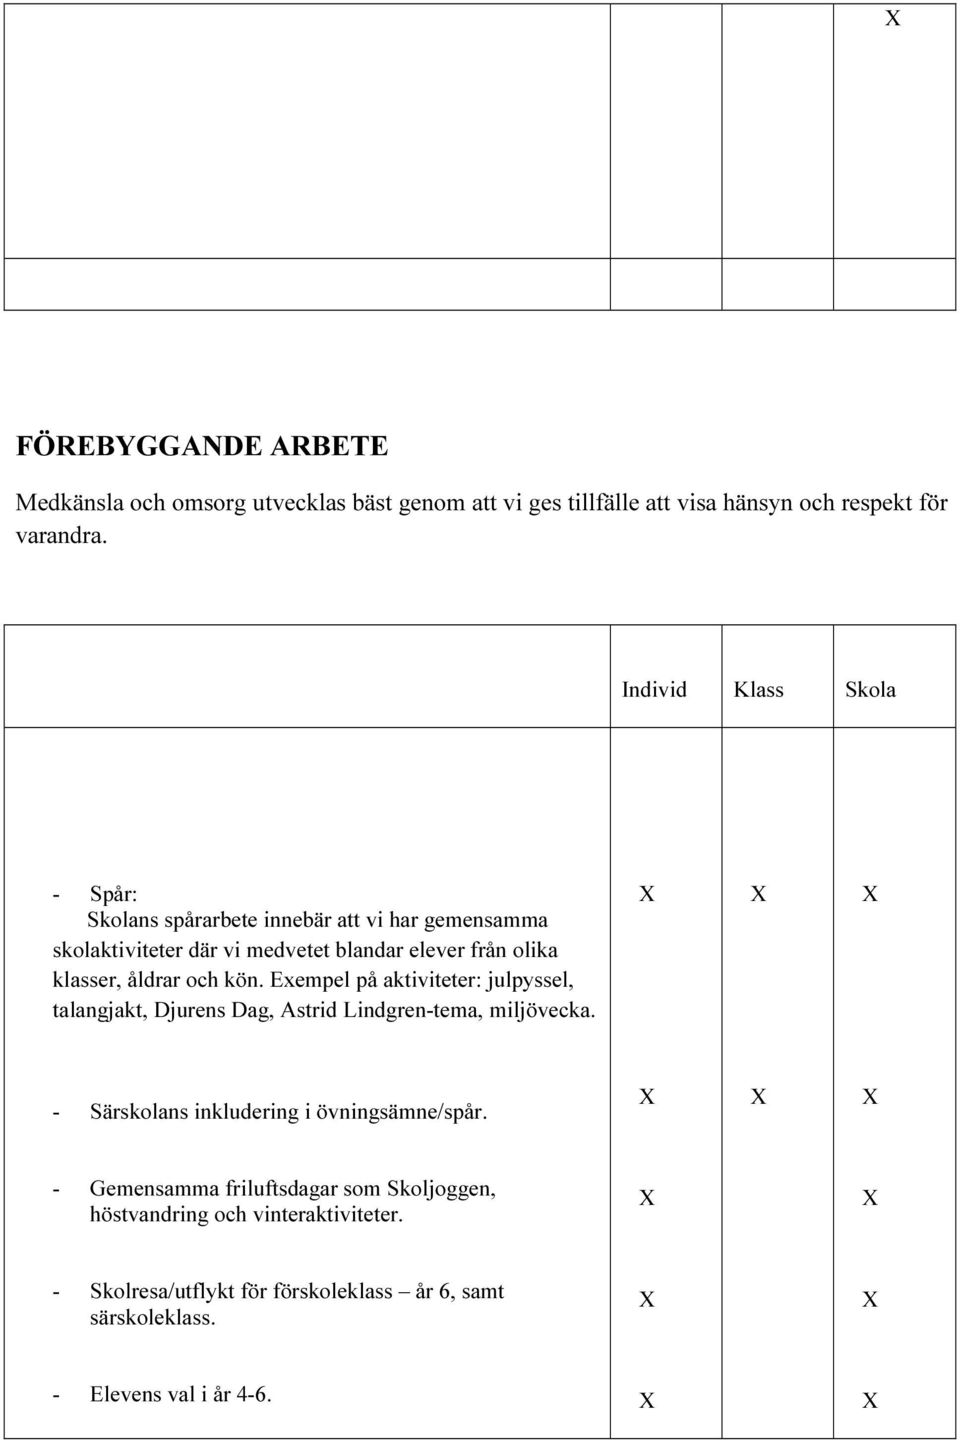 åldrar och kön. Exempel på aktiviteter: julpyssel, talangjakt, Djurens Dag, Astrid Lindgren-tema, miljövecka.